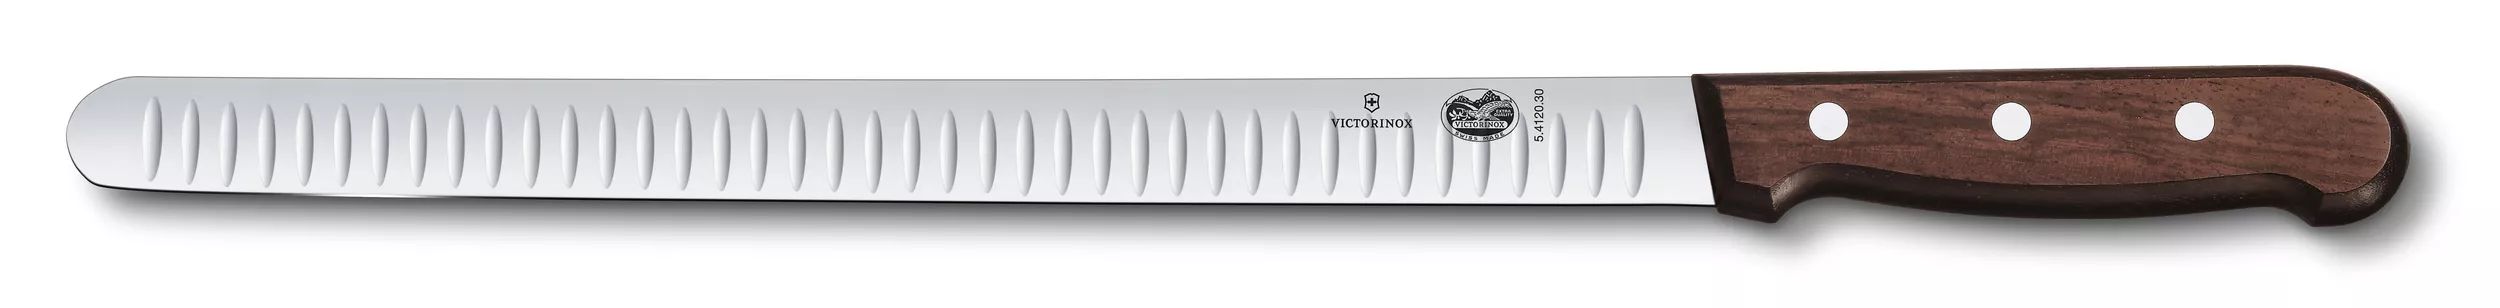 Victorinox Swiss Classic Ceppo di coltelli, 9 pezzi, marrone - Worldshop